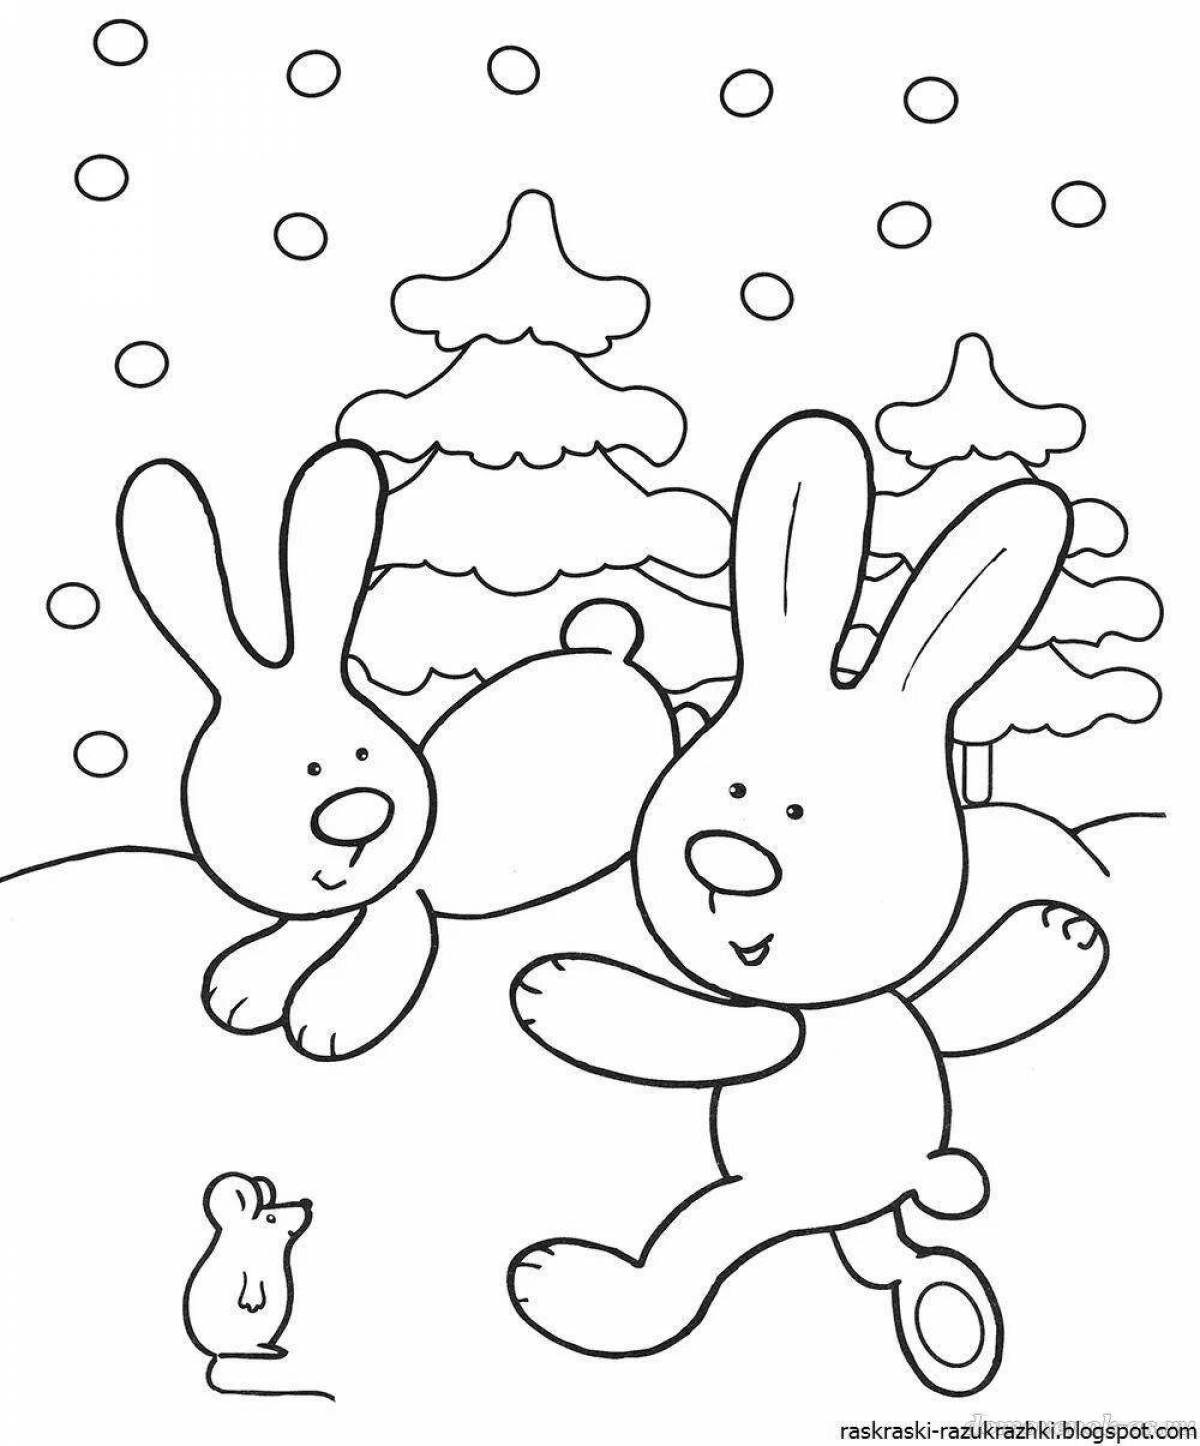 Завораживающая раскраска кролик для детей 2-3 лет